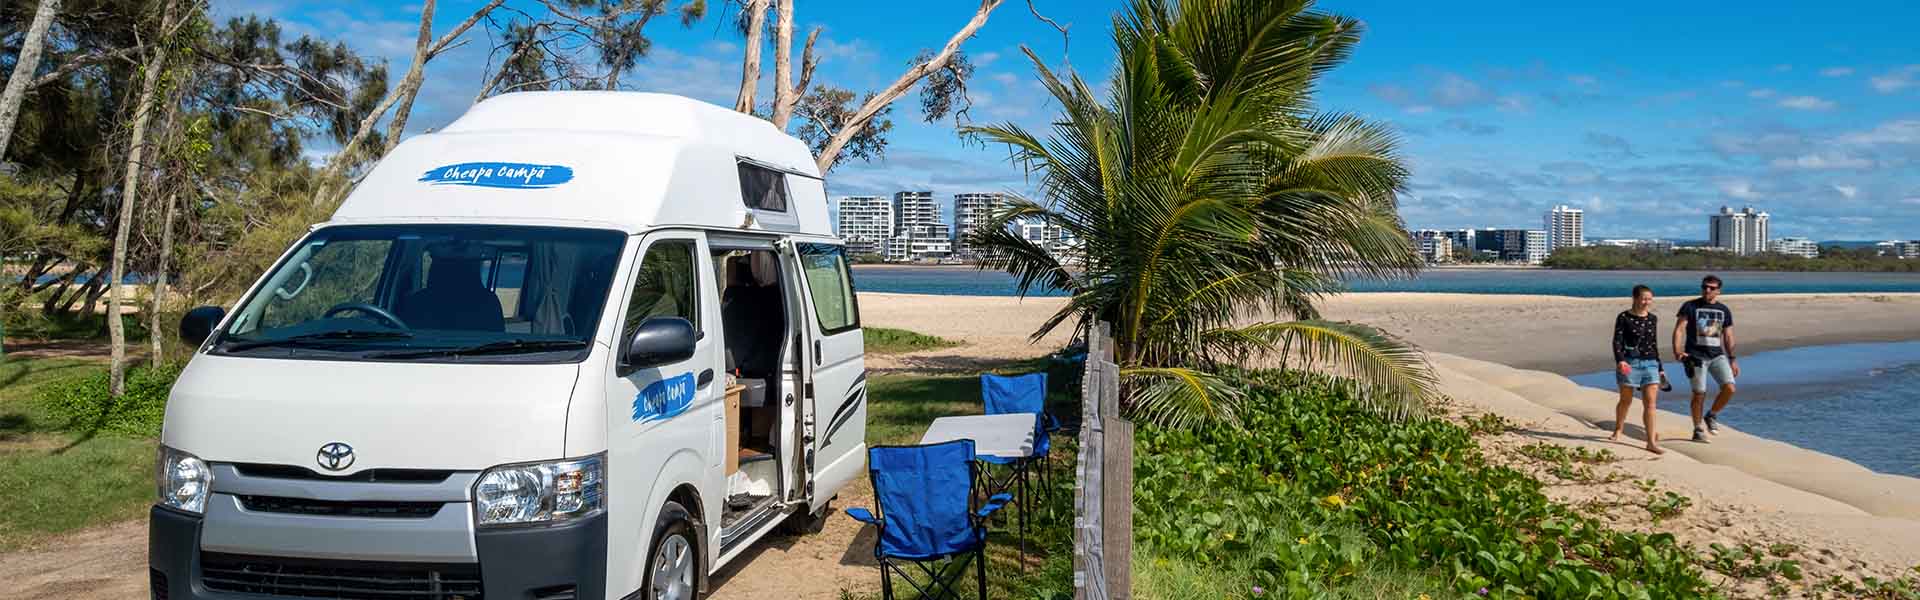 Cheapa campervan near beach at Sunshine Coast, QLD